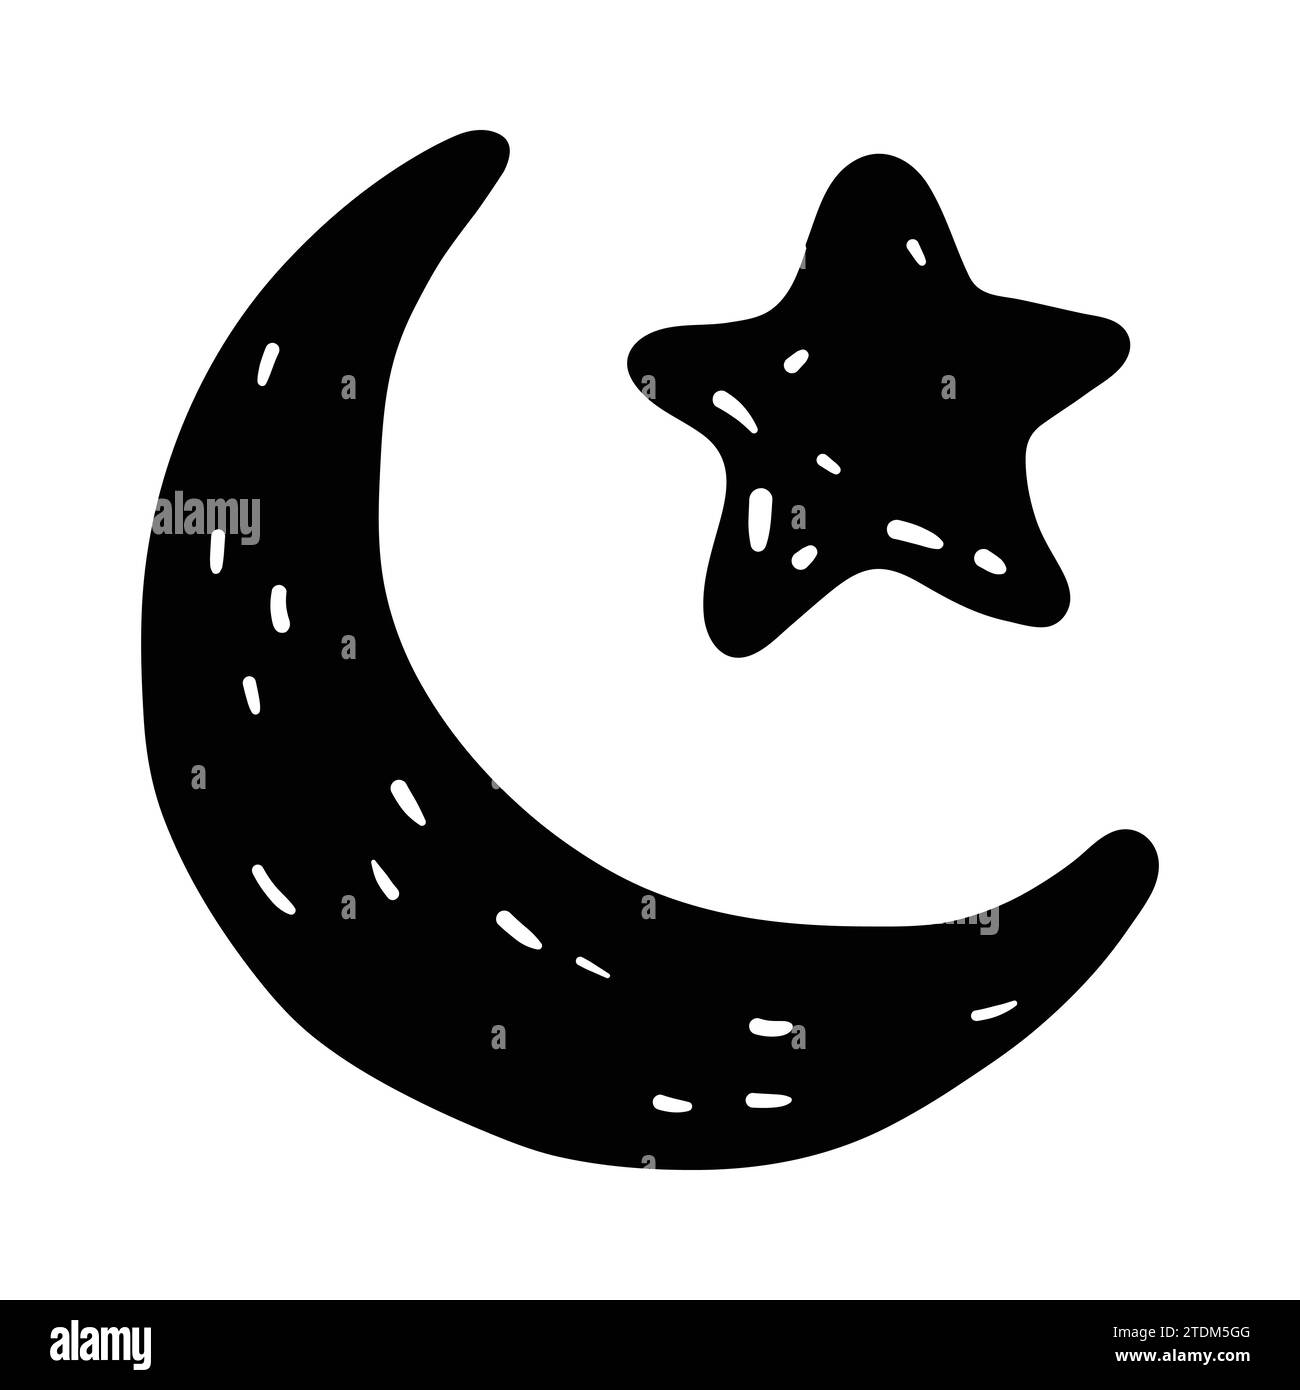 Illustrazione vettoriale per il concetto Ramadan. Illustrazione Vettoriale